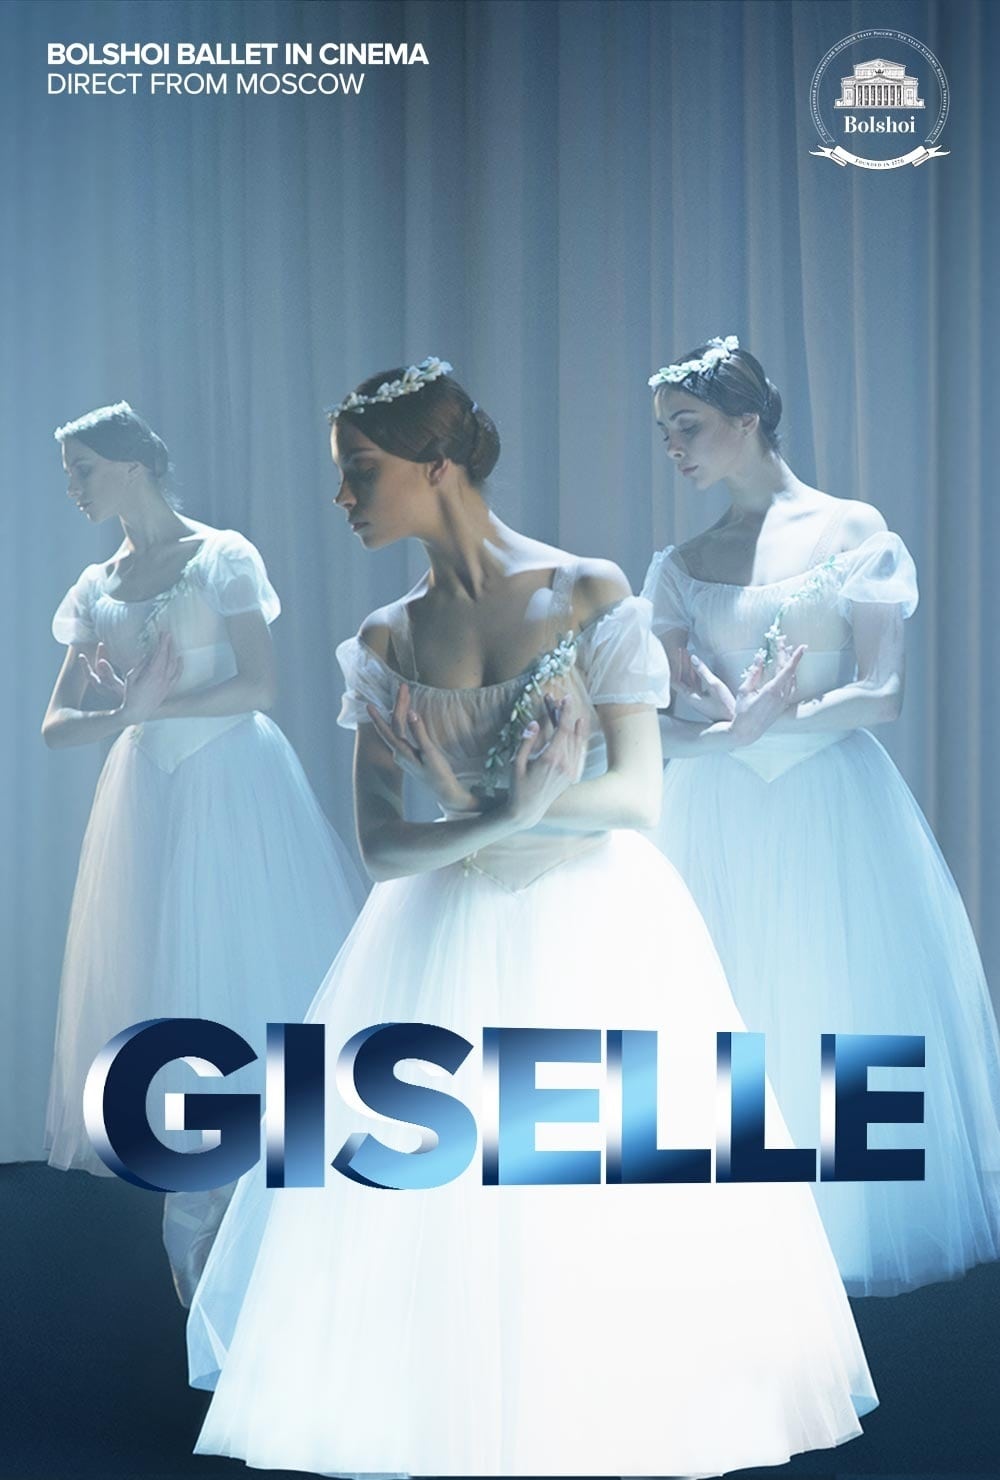 Bolshoi Ballet: Giselle